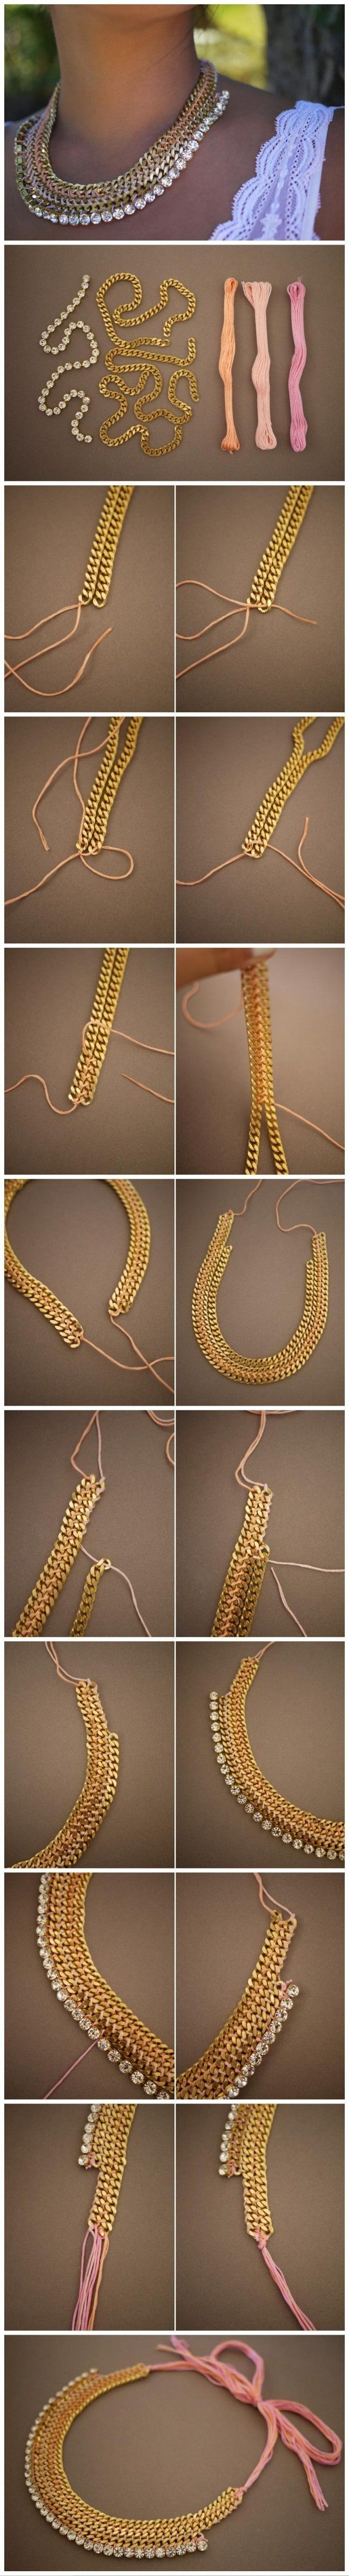 DIY necklace #tutorial